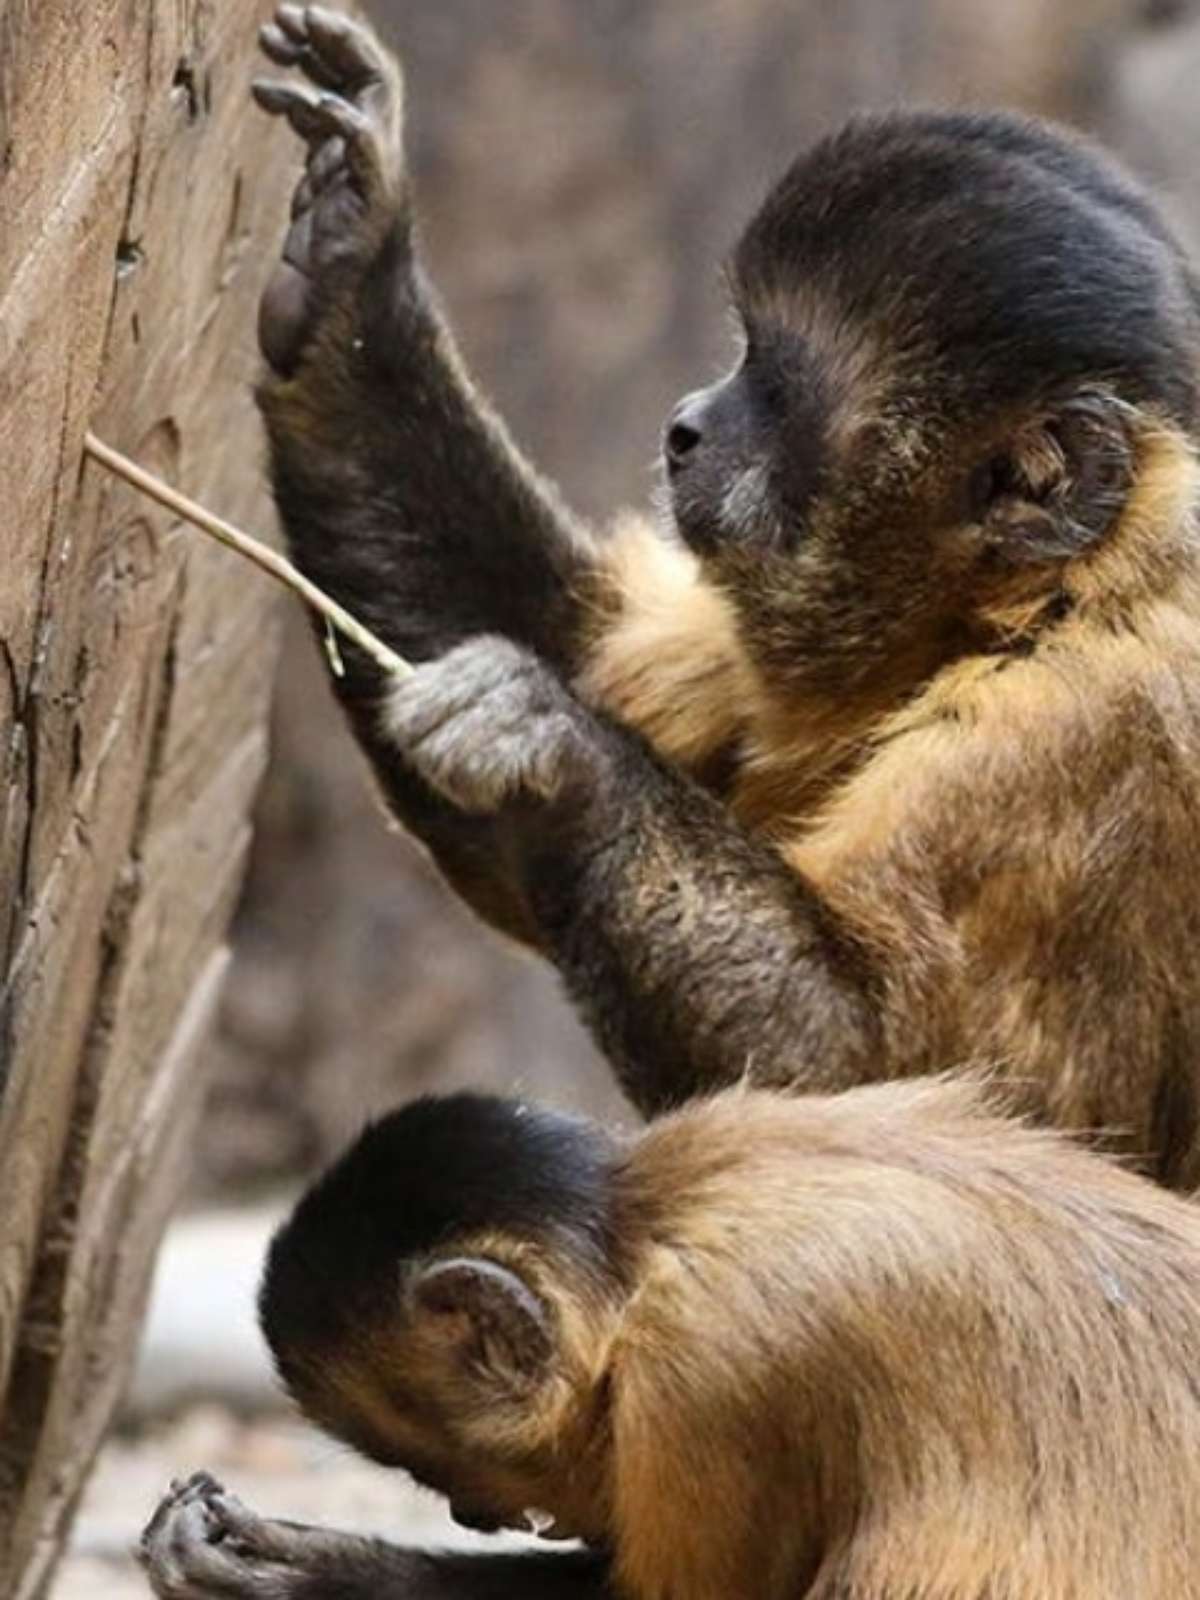 Com tecnologia própria, macacos entraram em sua 'Idade da Pedra', dizem  cientistas - BBC News Brasil